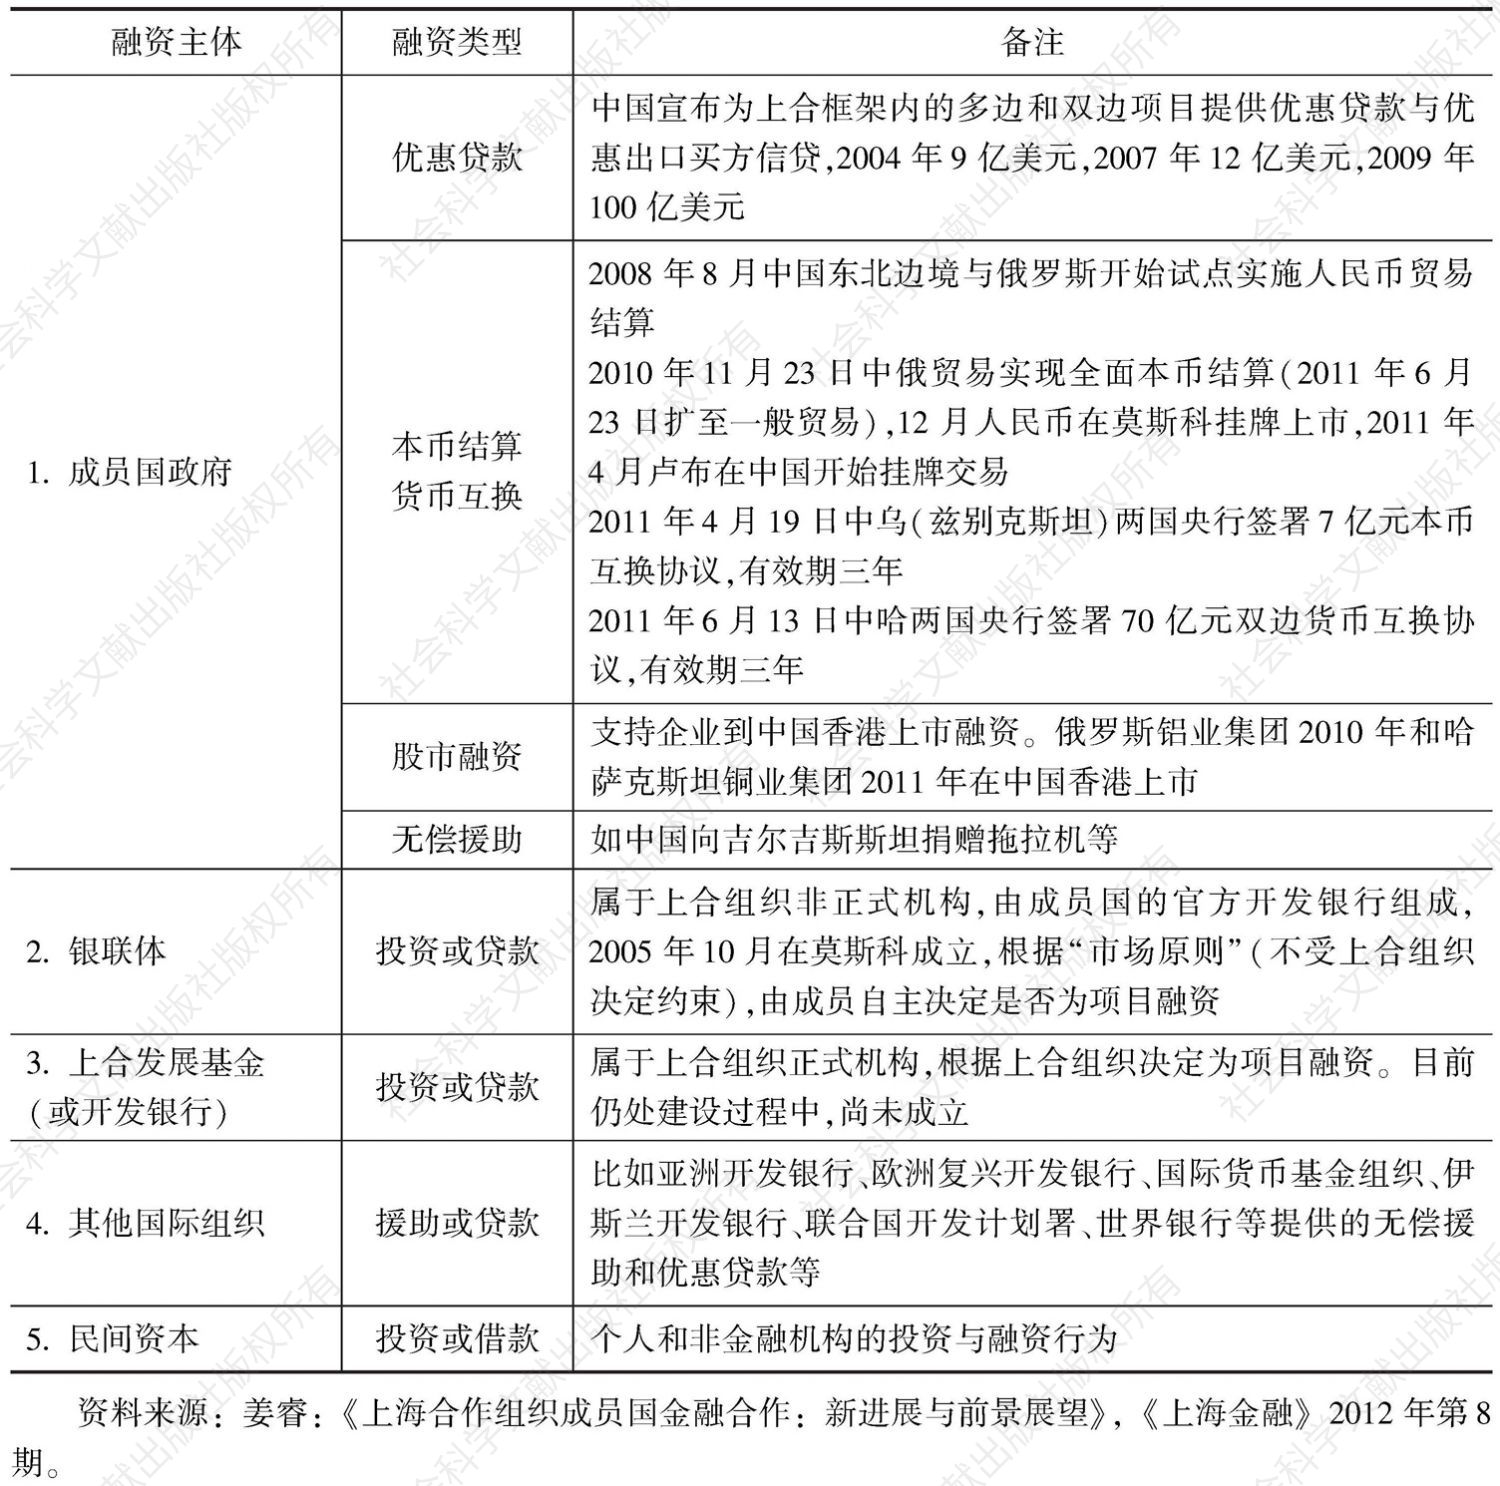 表11-2 上海合作组织融资情况统计